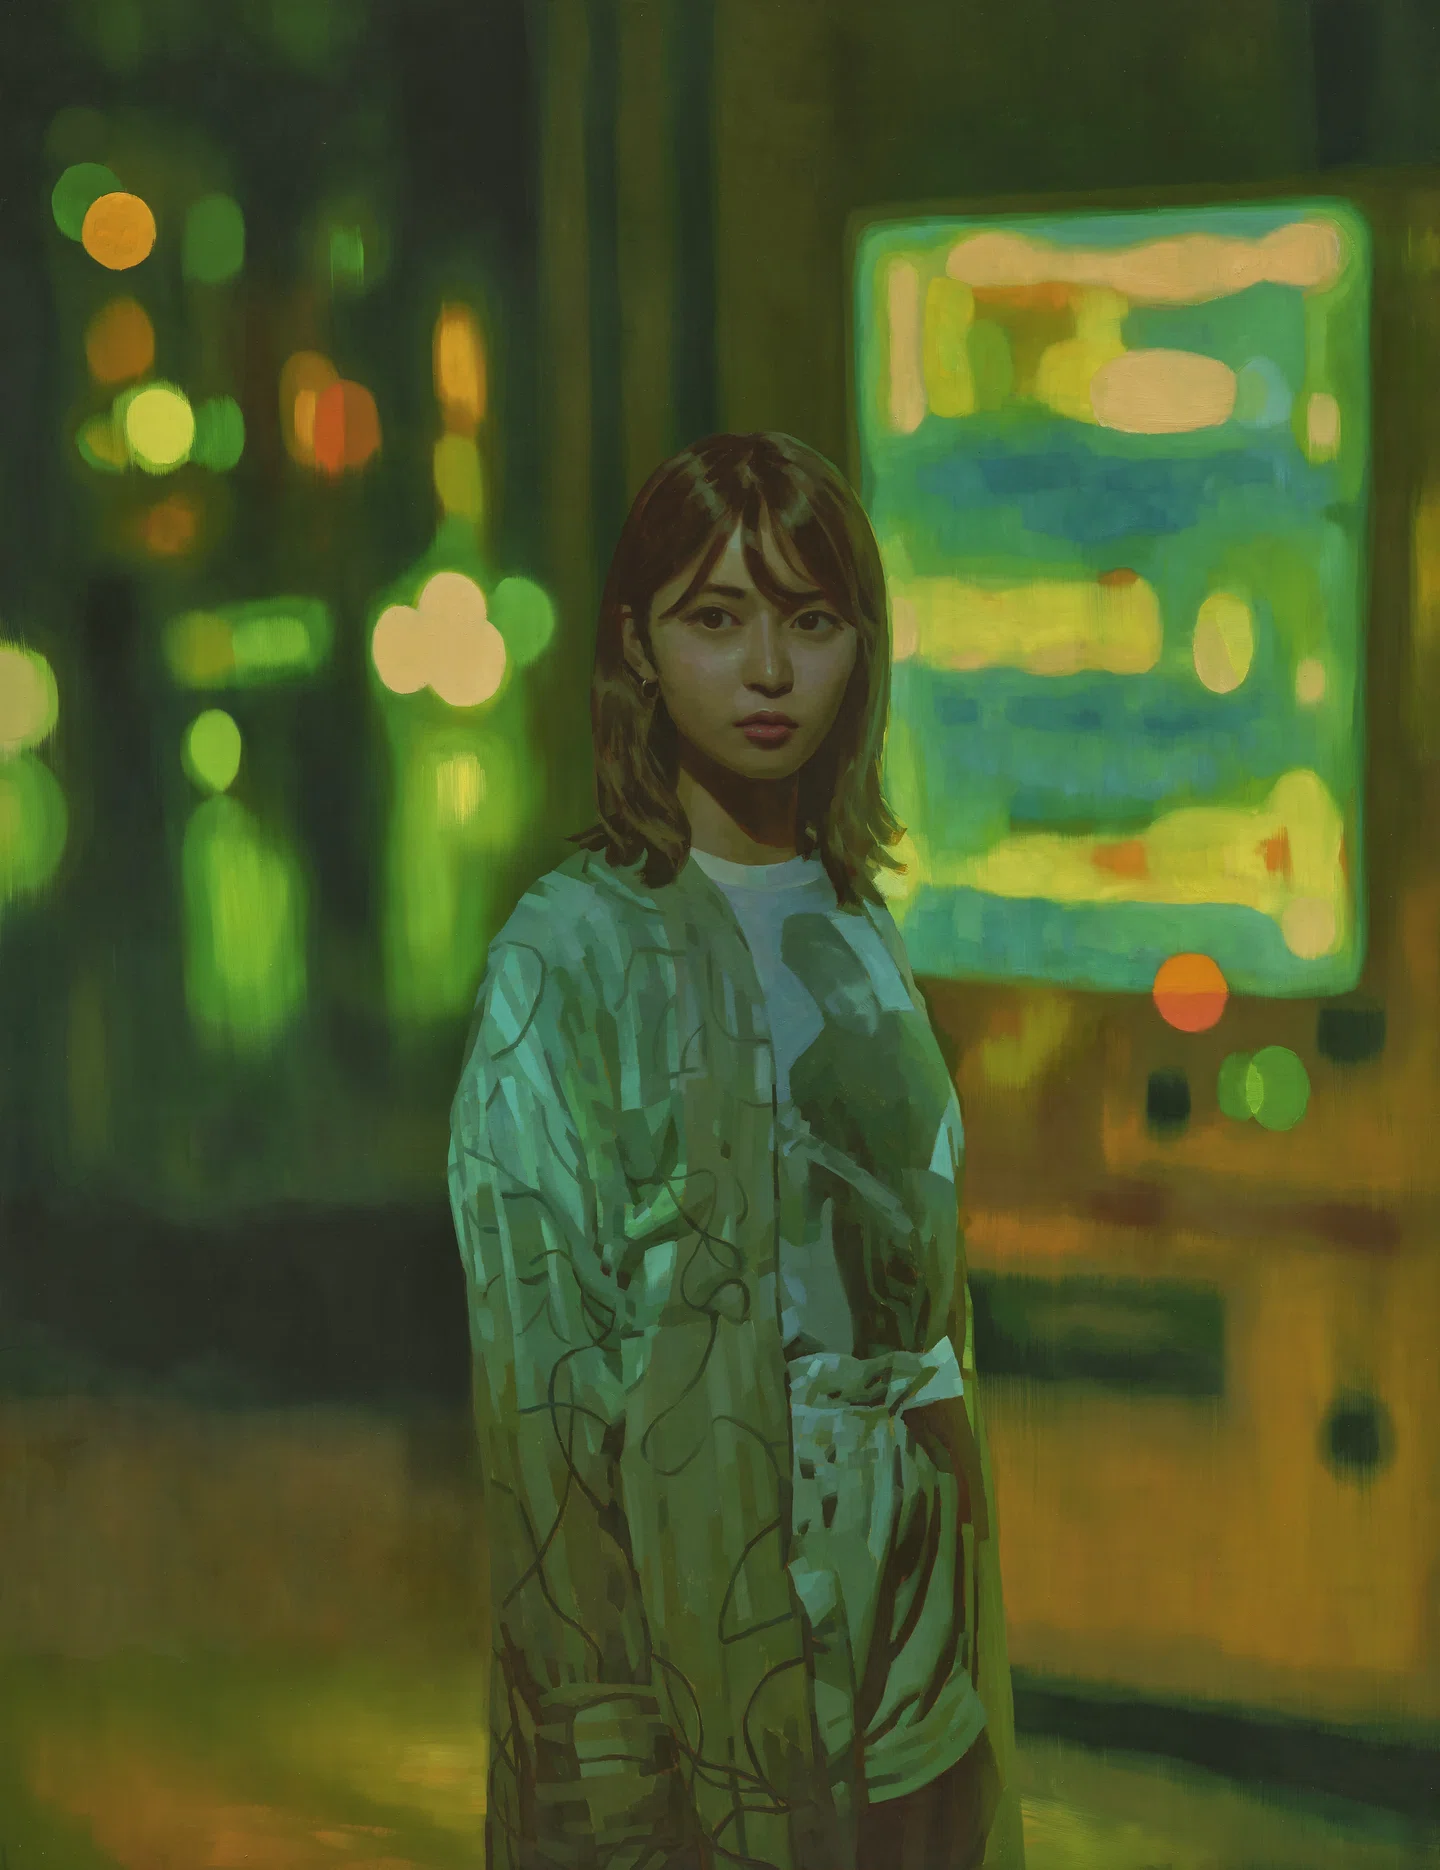 Inspirada nas pinturas de Rembrant, Keita Morimoto cria narrativas com luz e escuridão